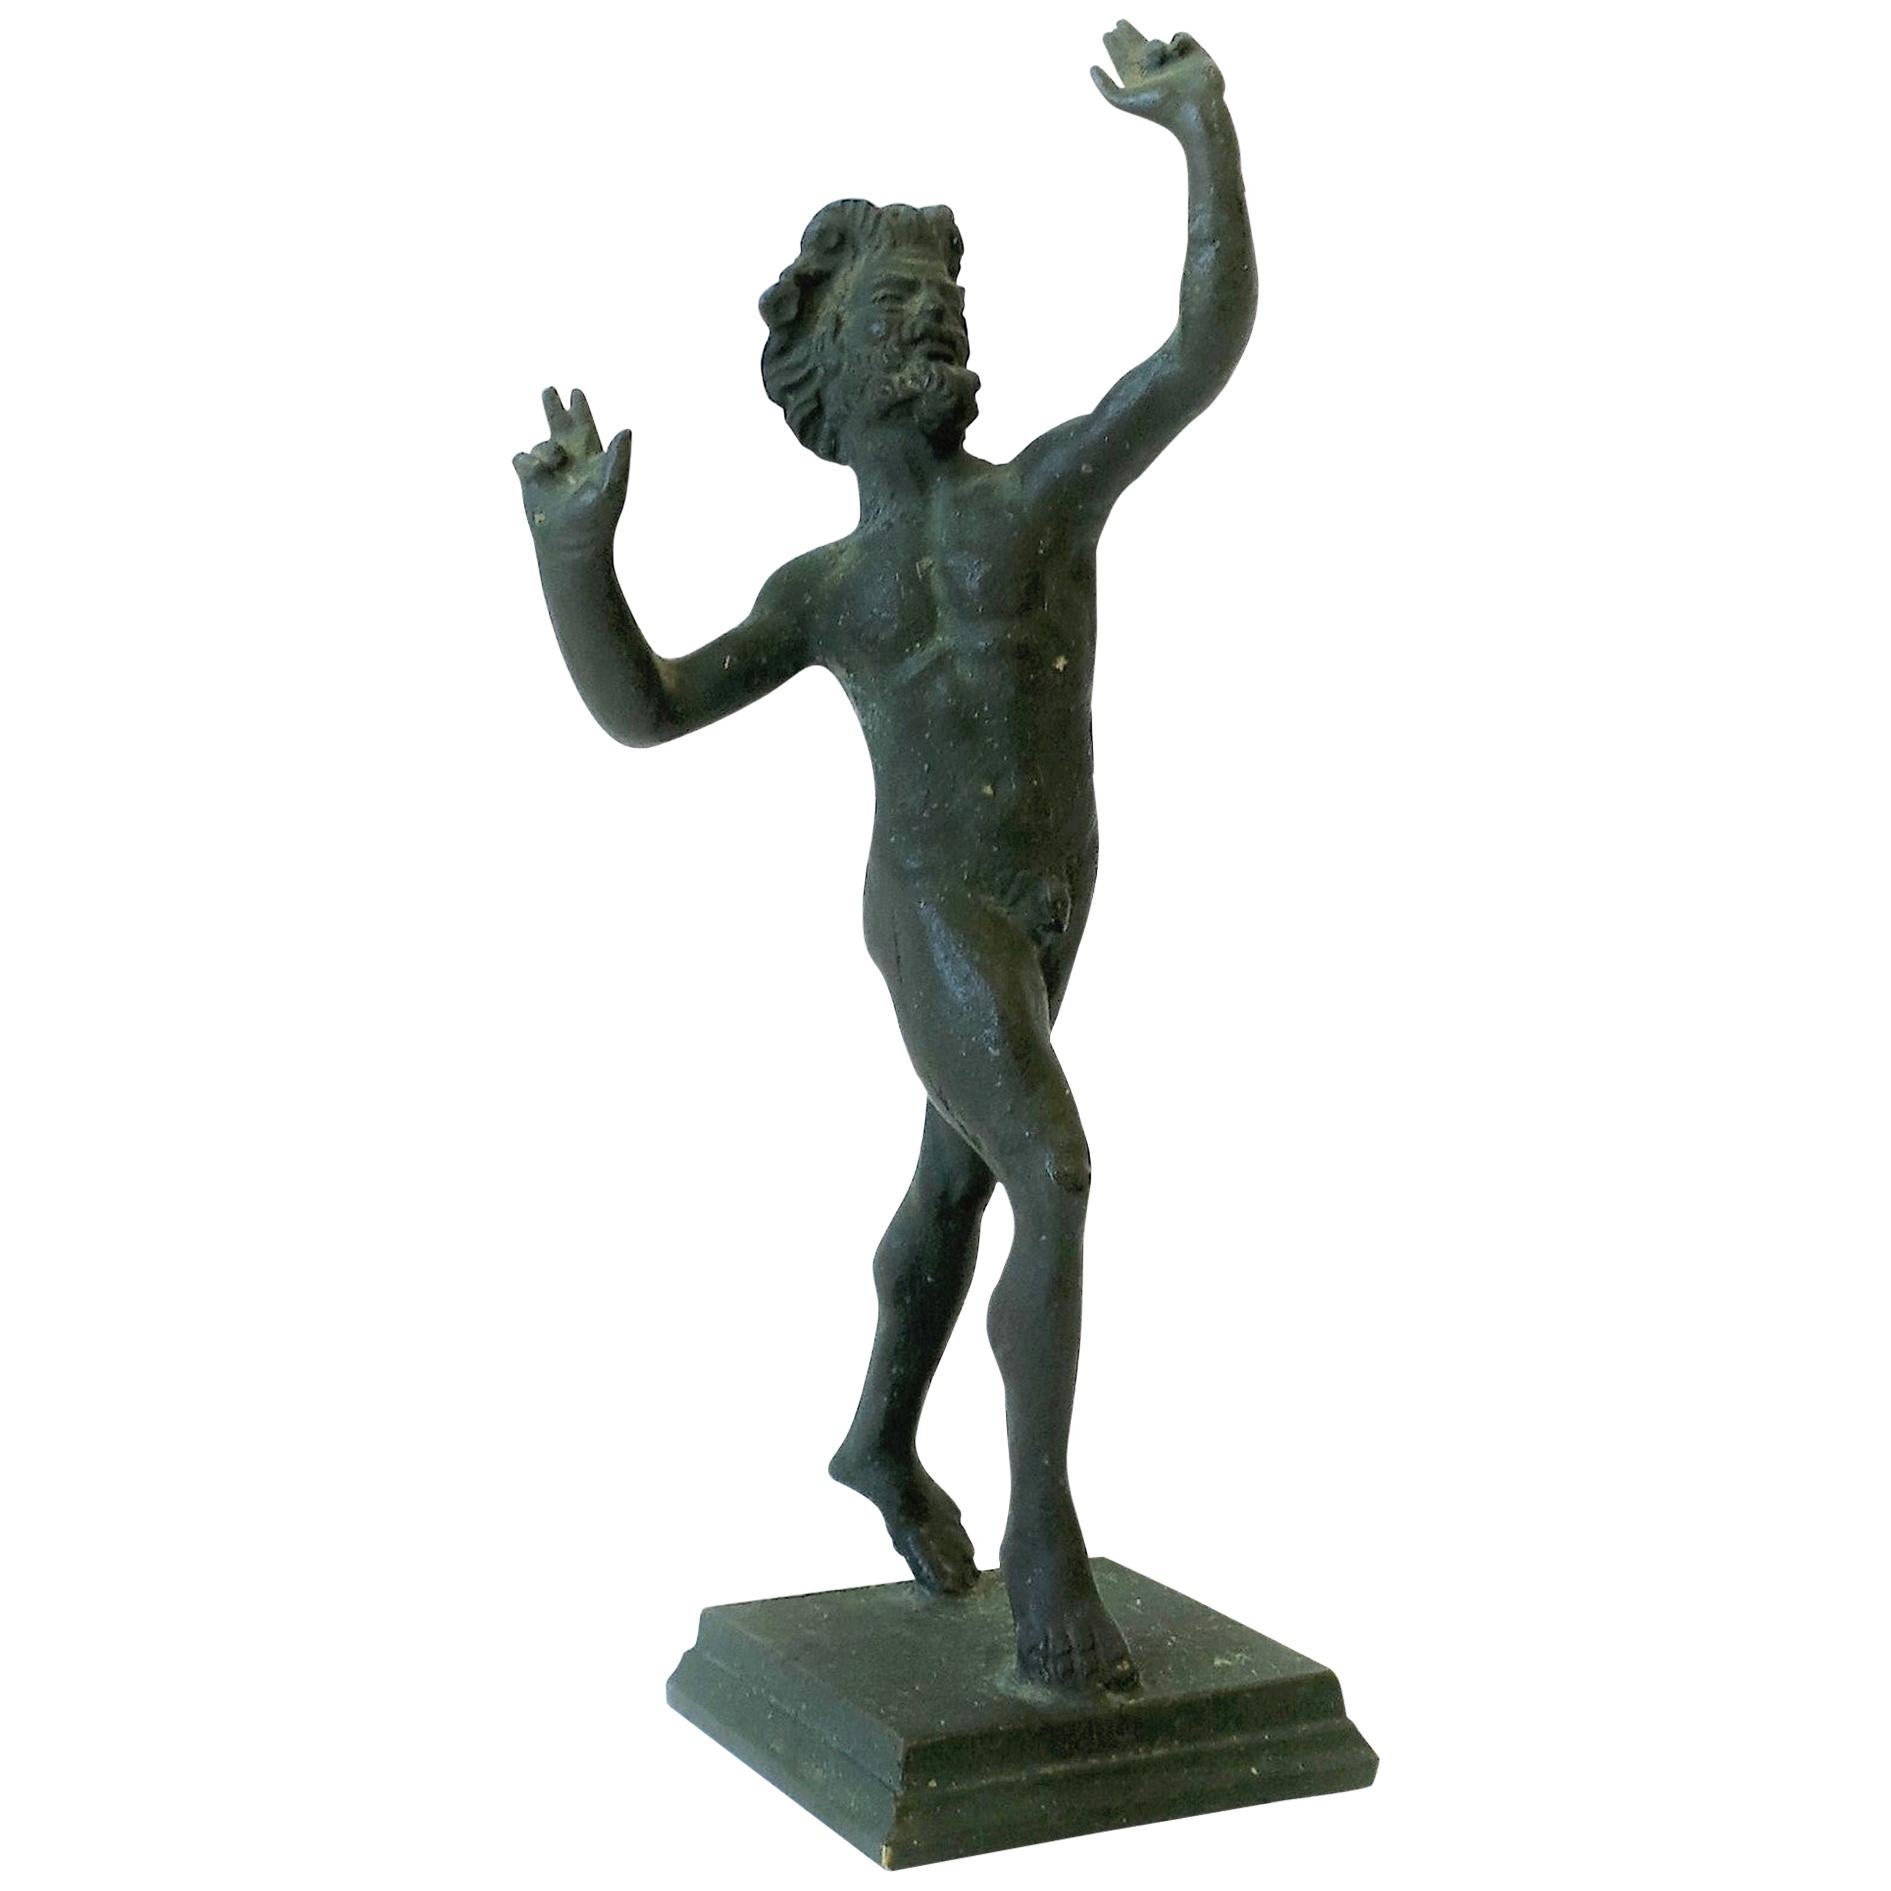 Escultura de bronce de Baco, dios griego del vino, desnudo y desnudo